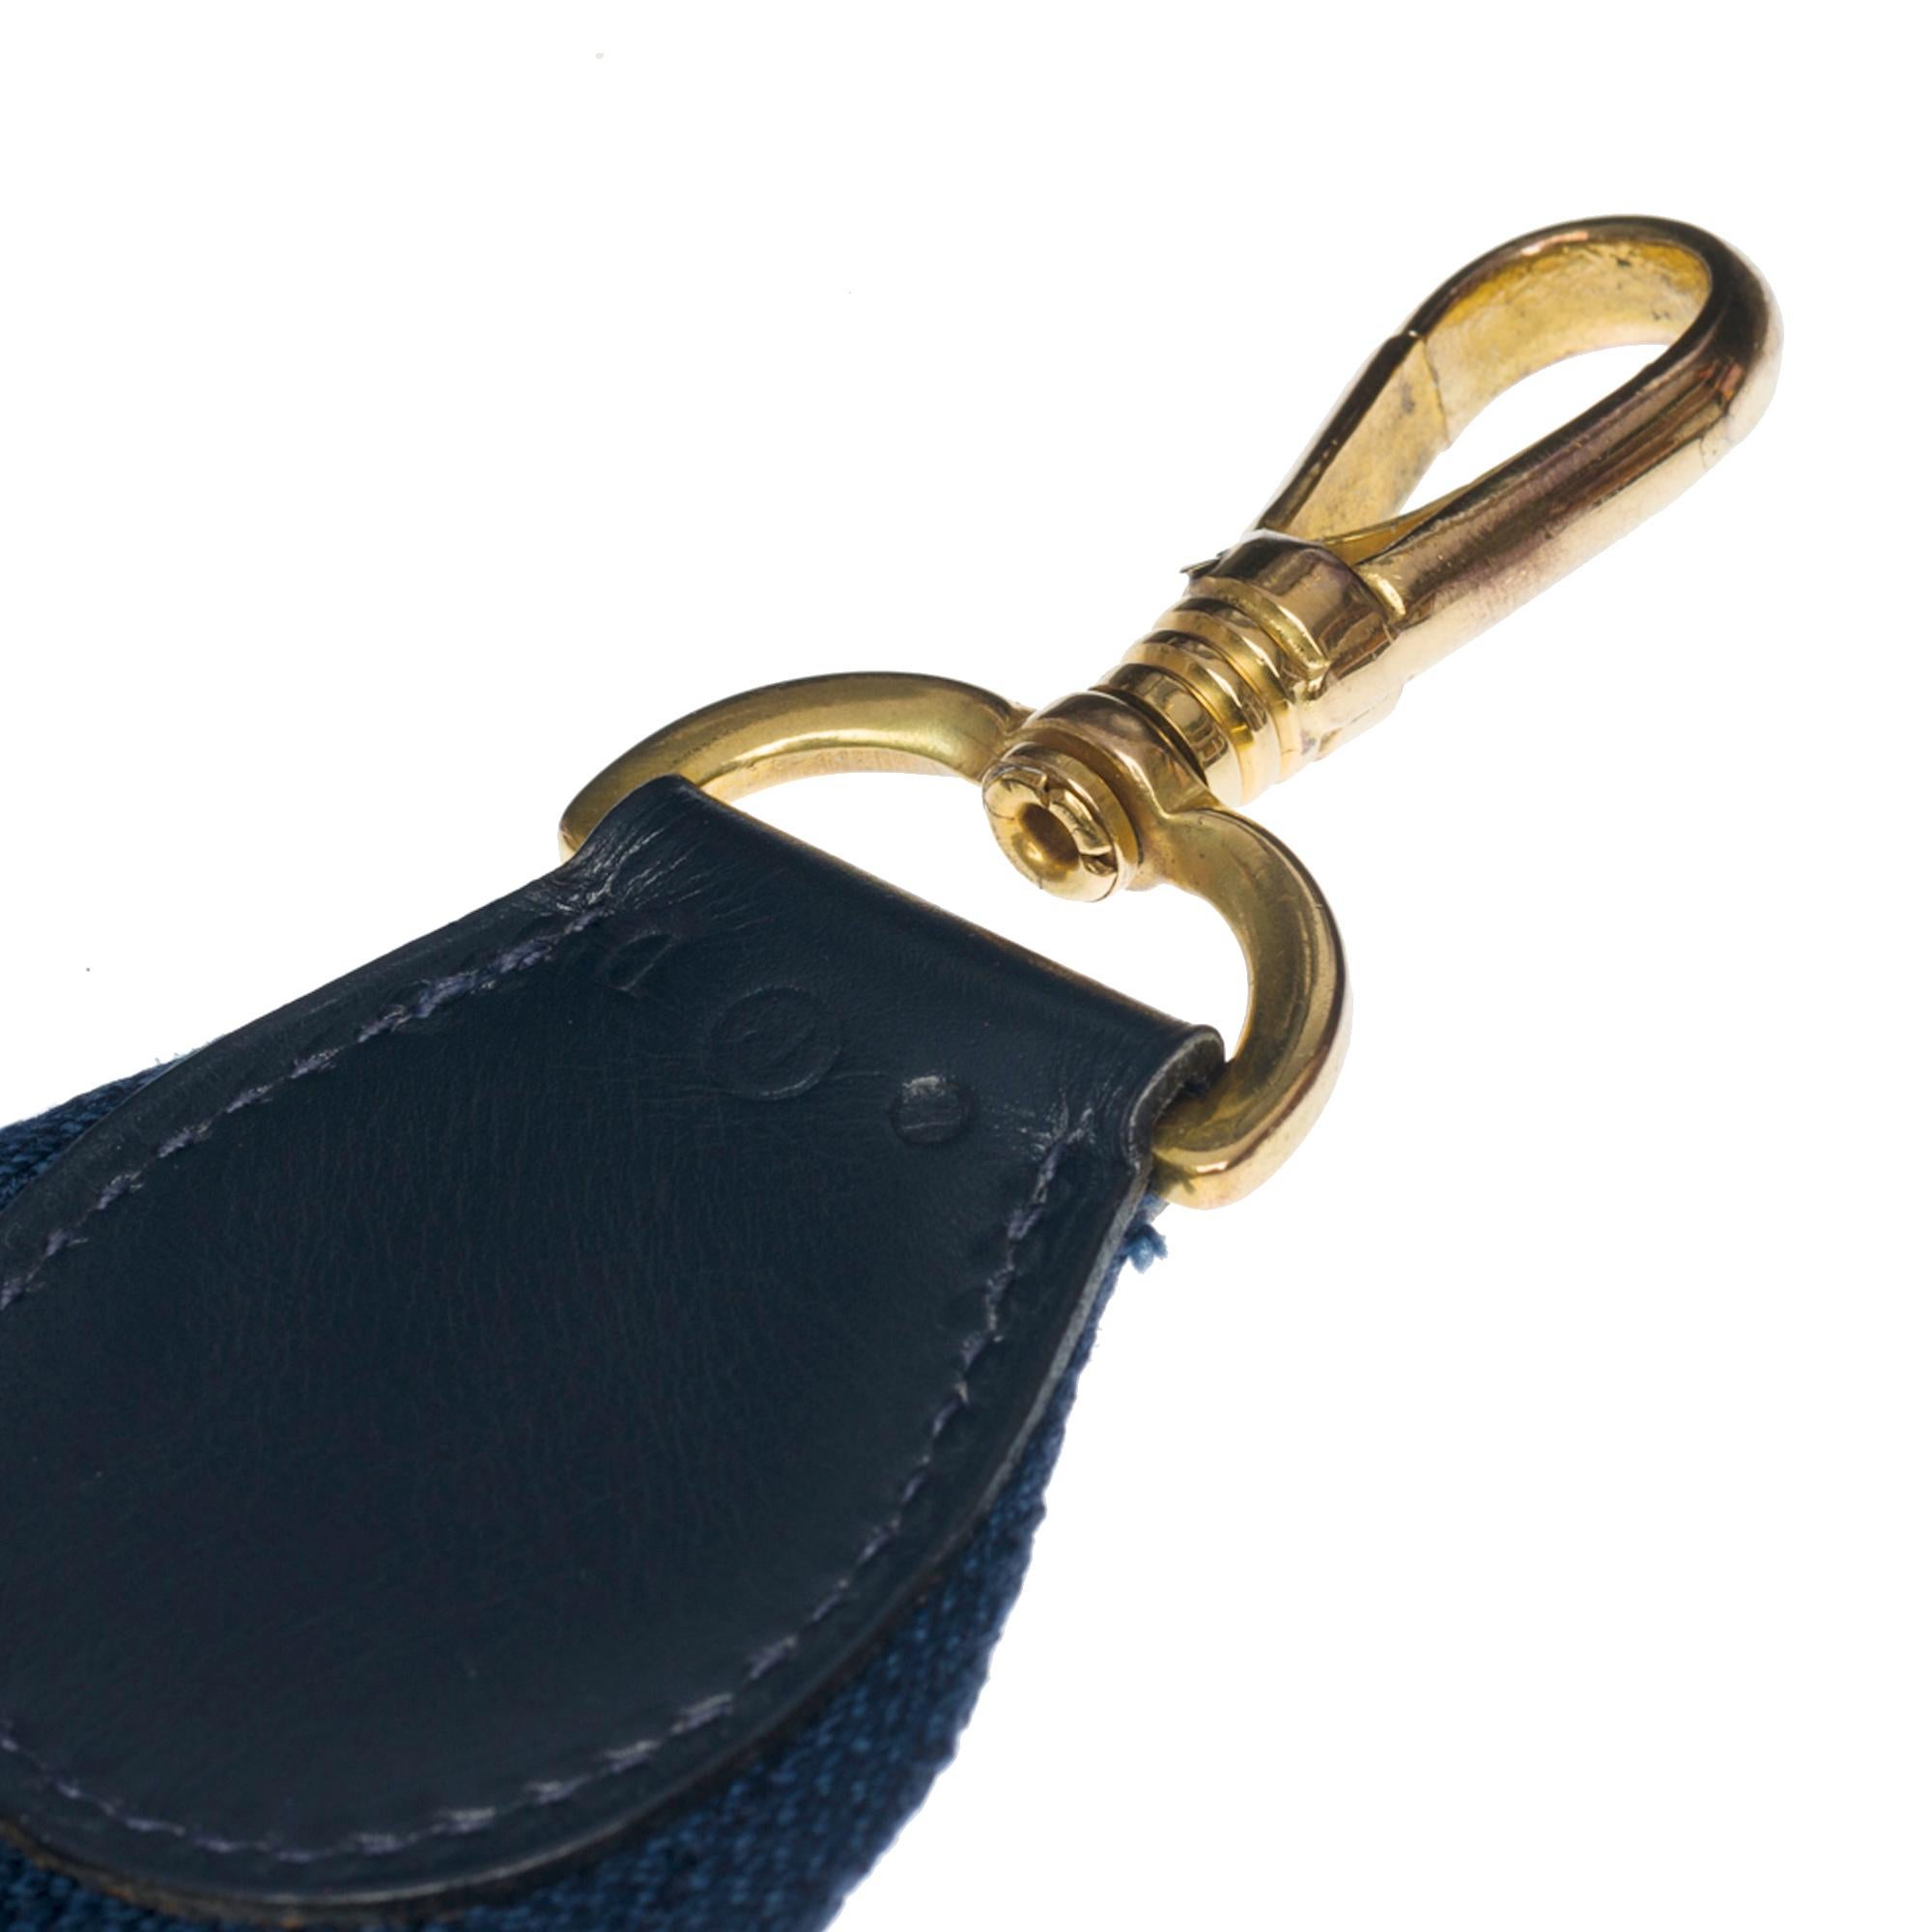 Rare Hermes Kelly 28 retourne handbag double strap in Navy blue box calfskin, GHW 4